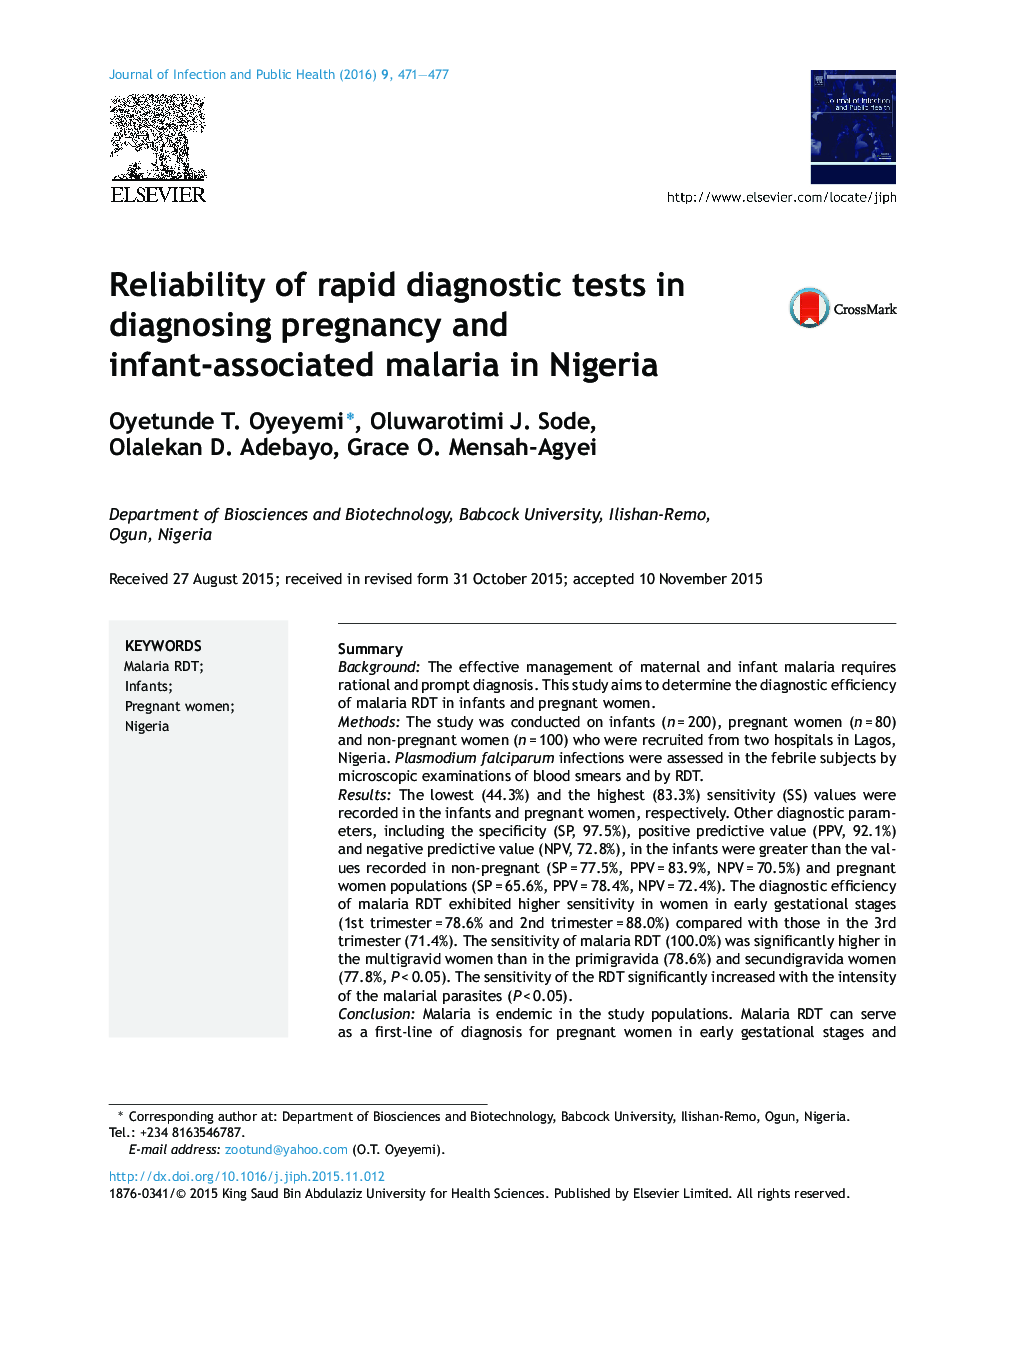 قابلیت اطمینان آزمایش های تشخیصی سریع در تشخیص حاملگی و مالاریای مرتبط با نوزاد در نیجریه